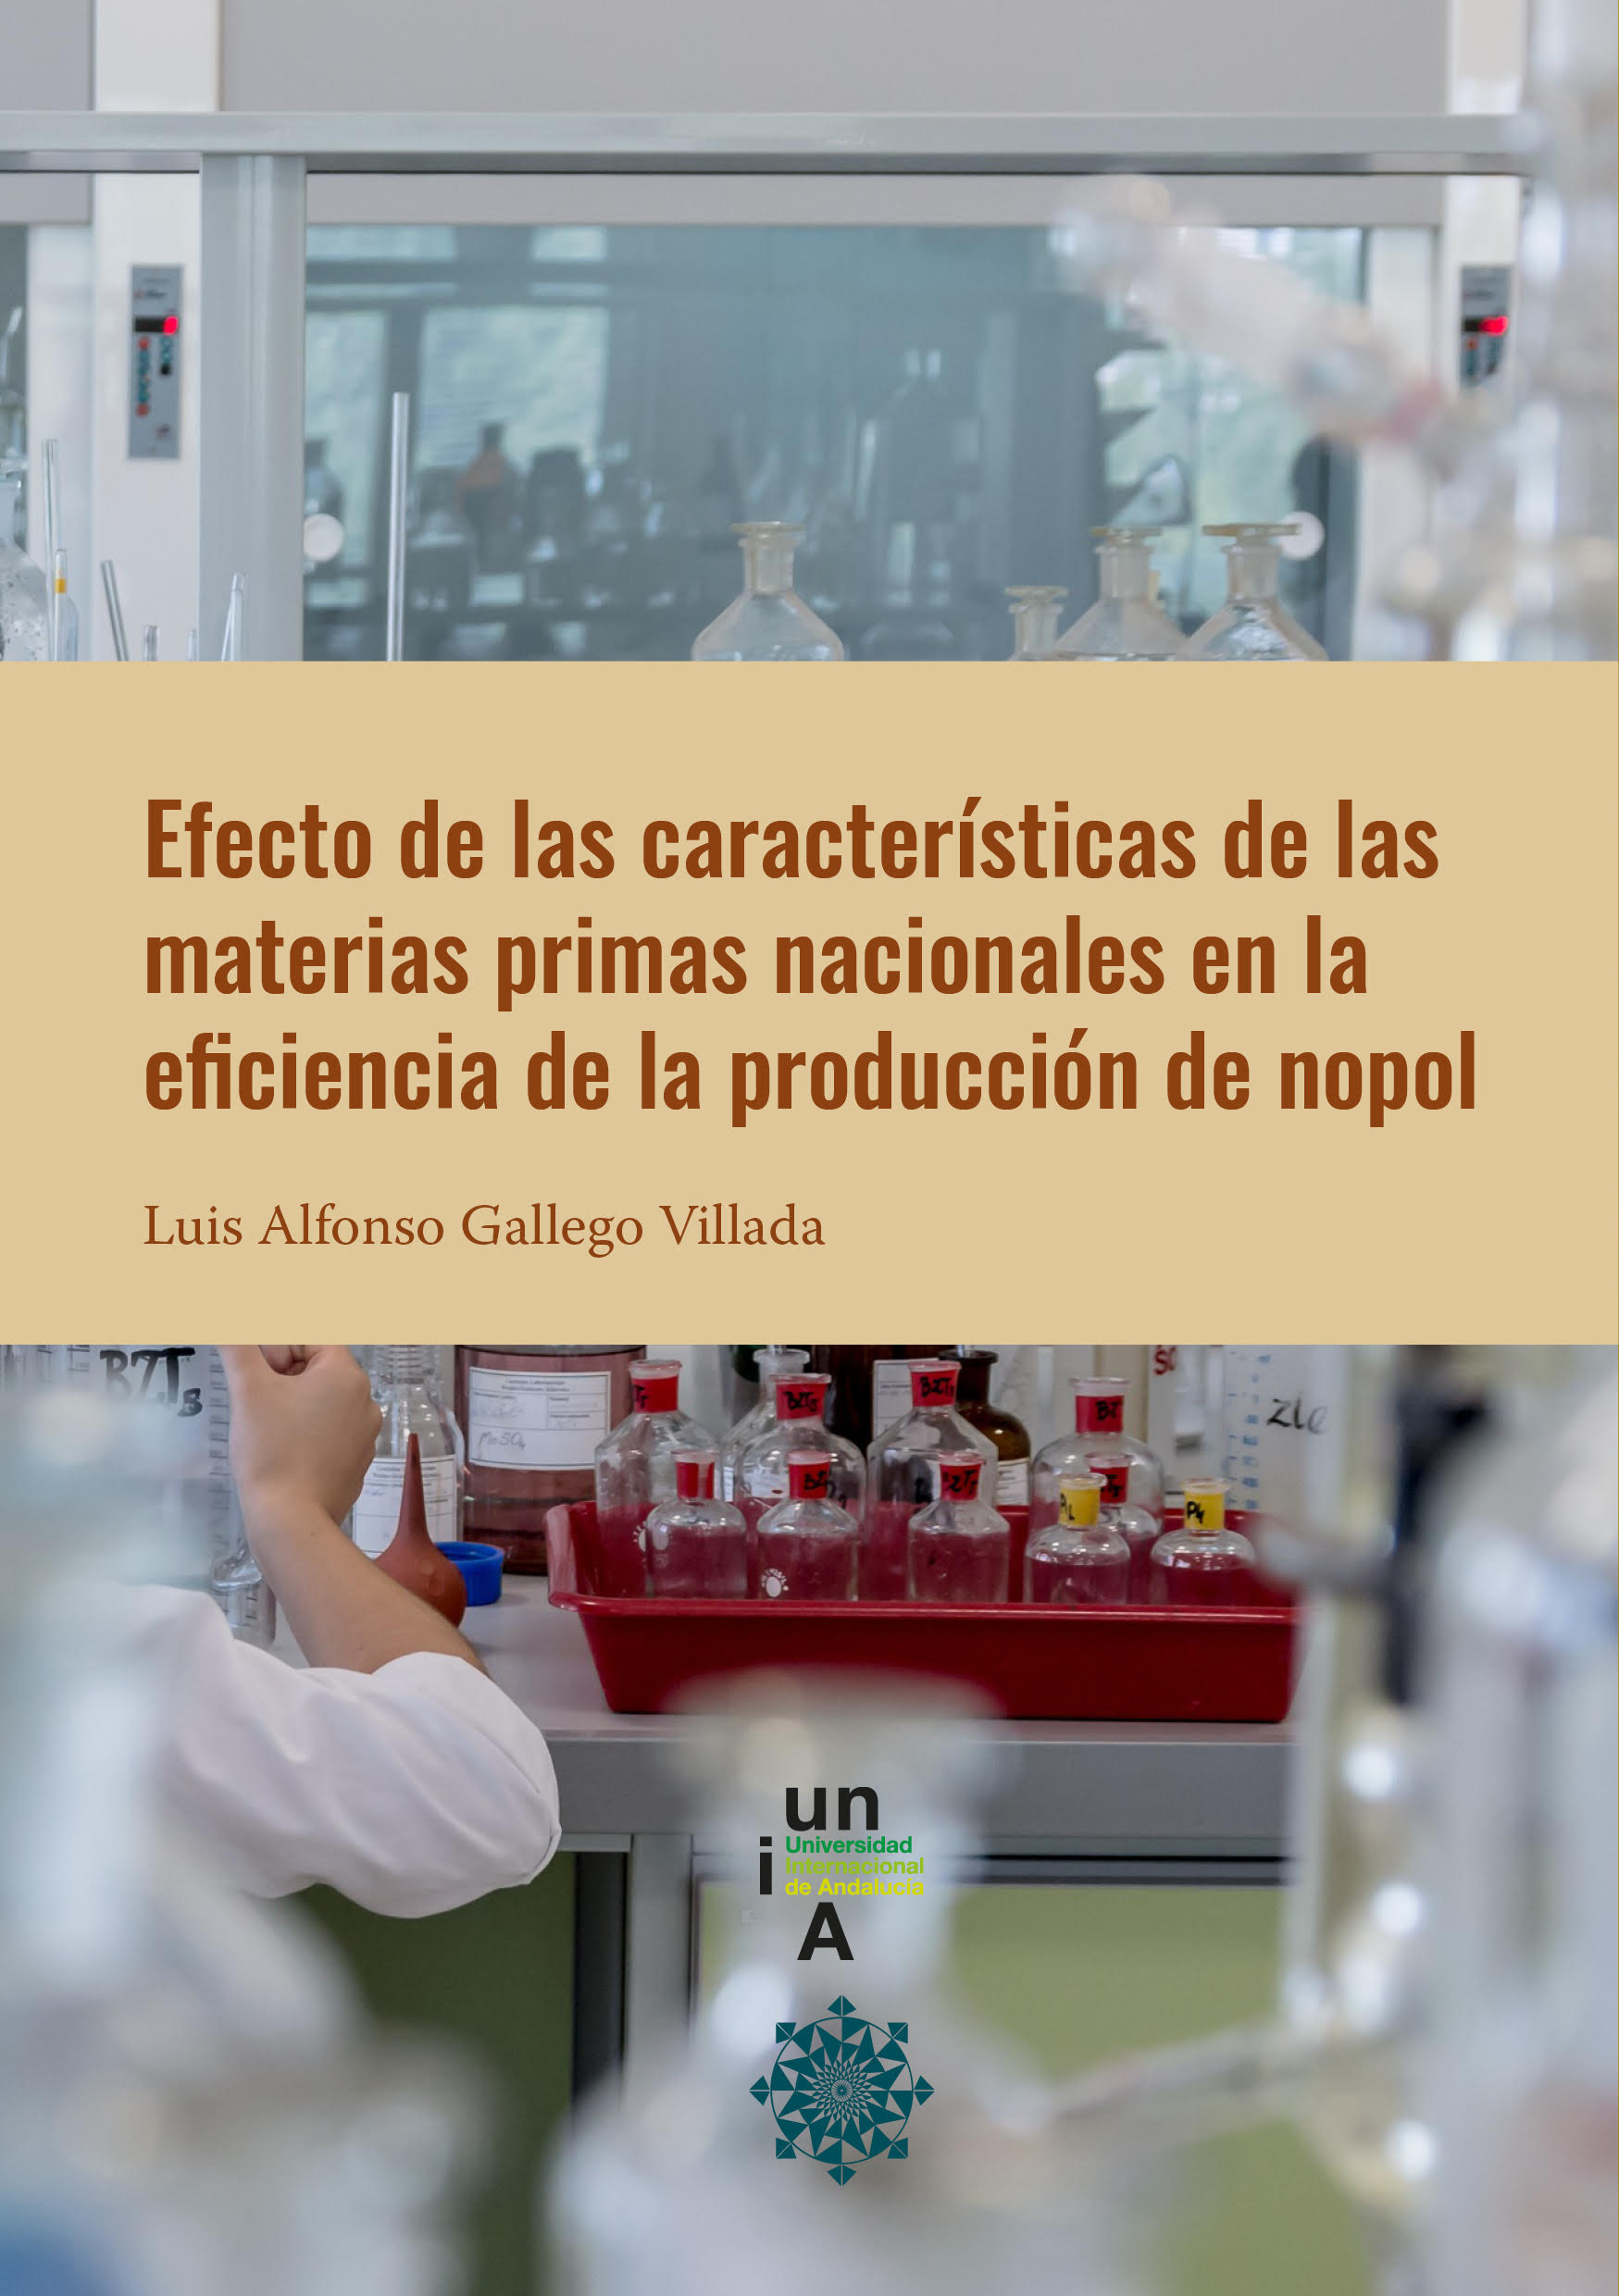 Efectos de las características de las materias primas nacionales en la eficiencia de la producción de nopol